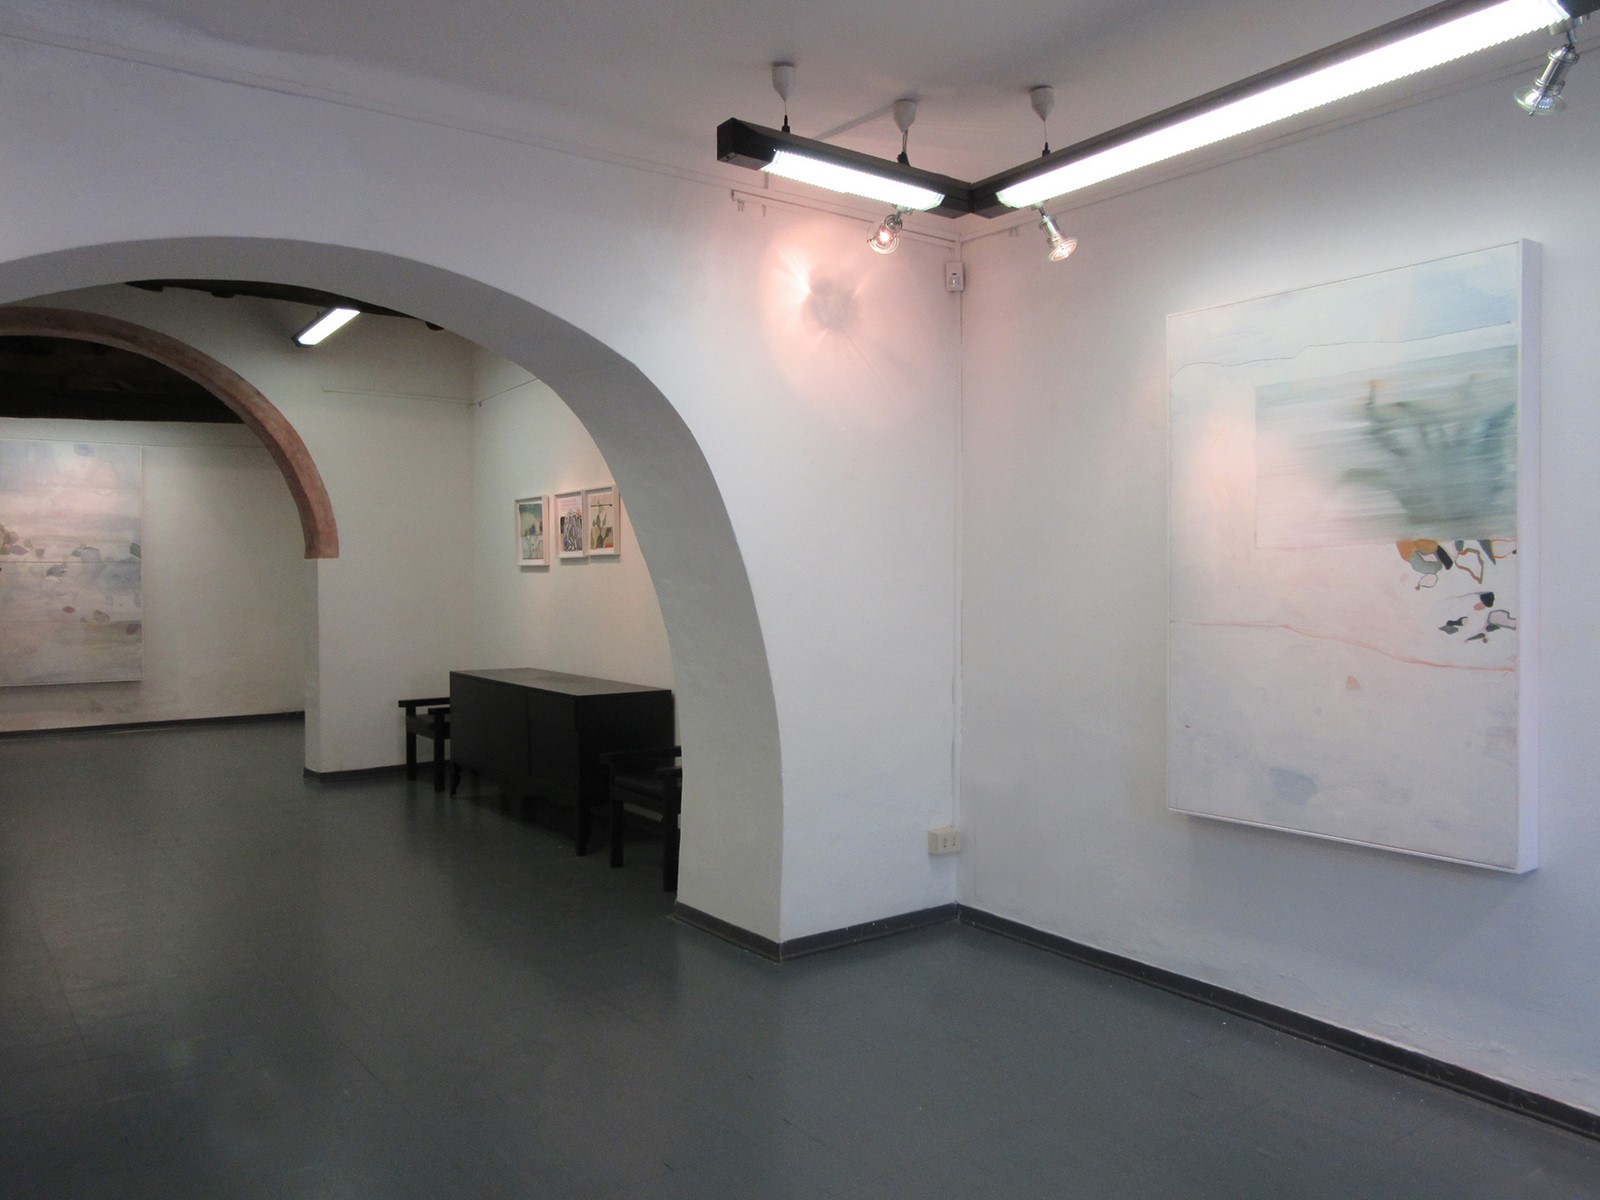 Allestimento Eros Opuntia, Galleria 8,75 Artecontemporanea, Reggio Emilia